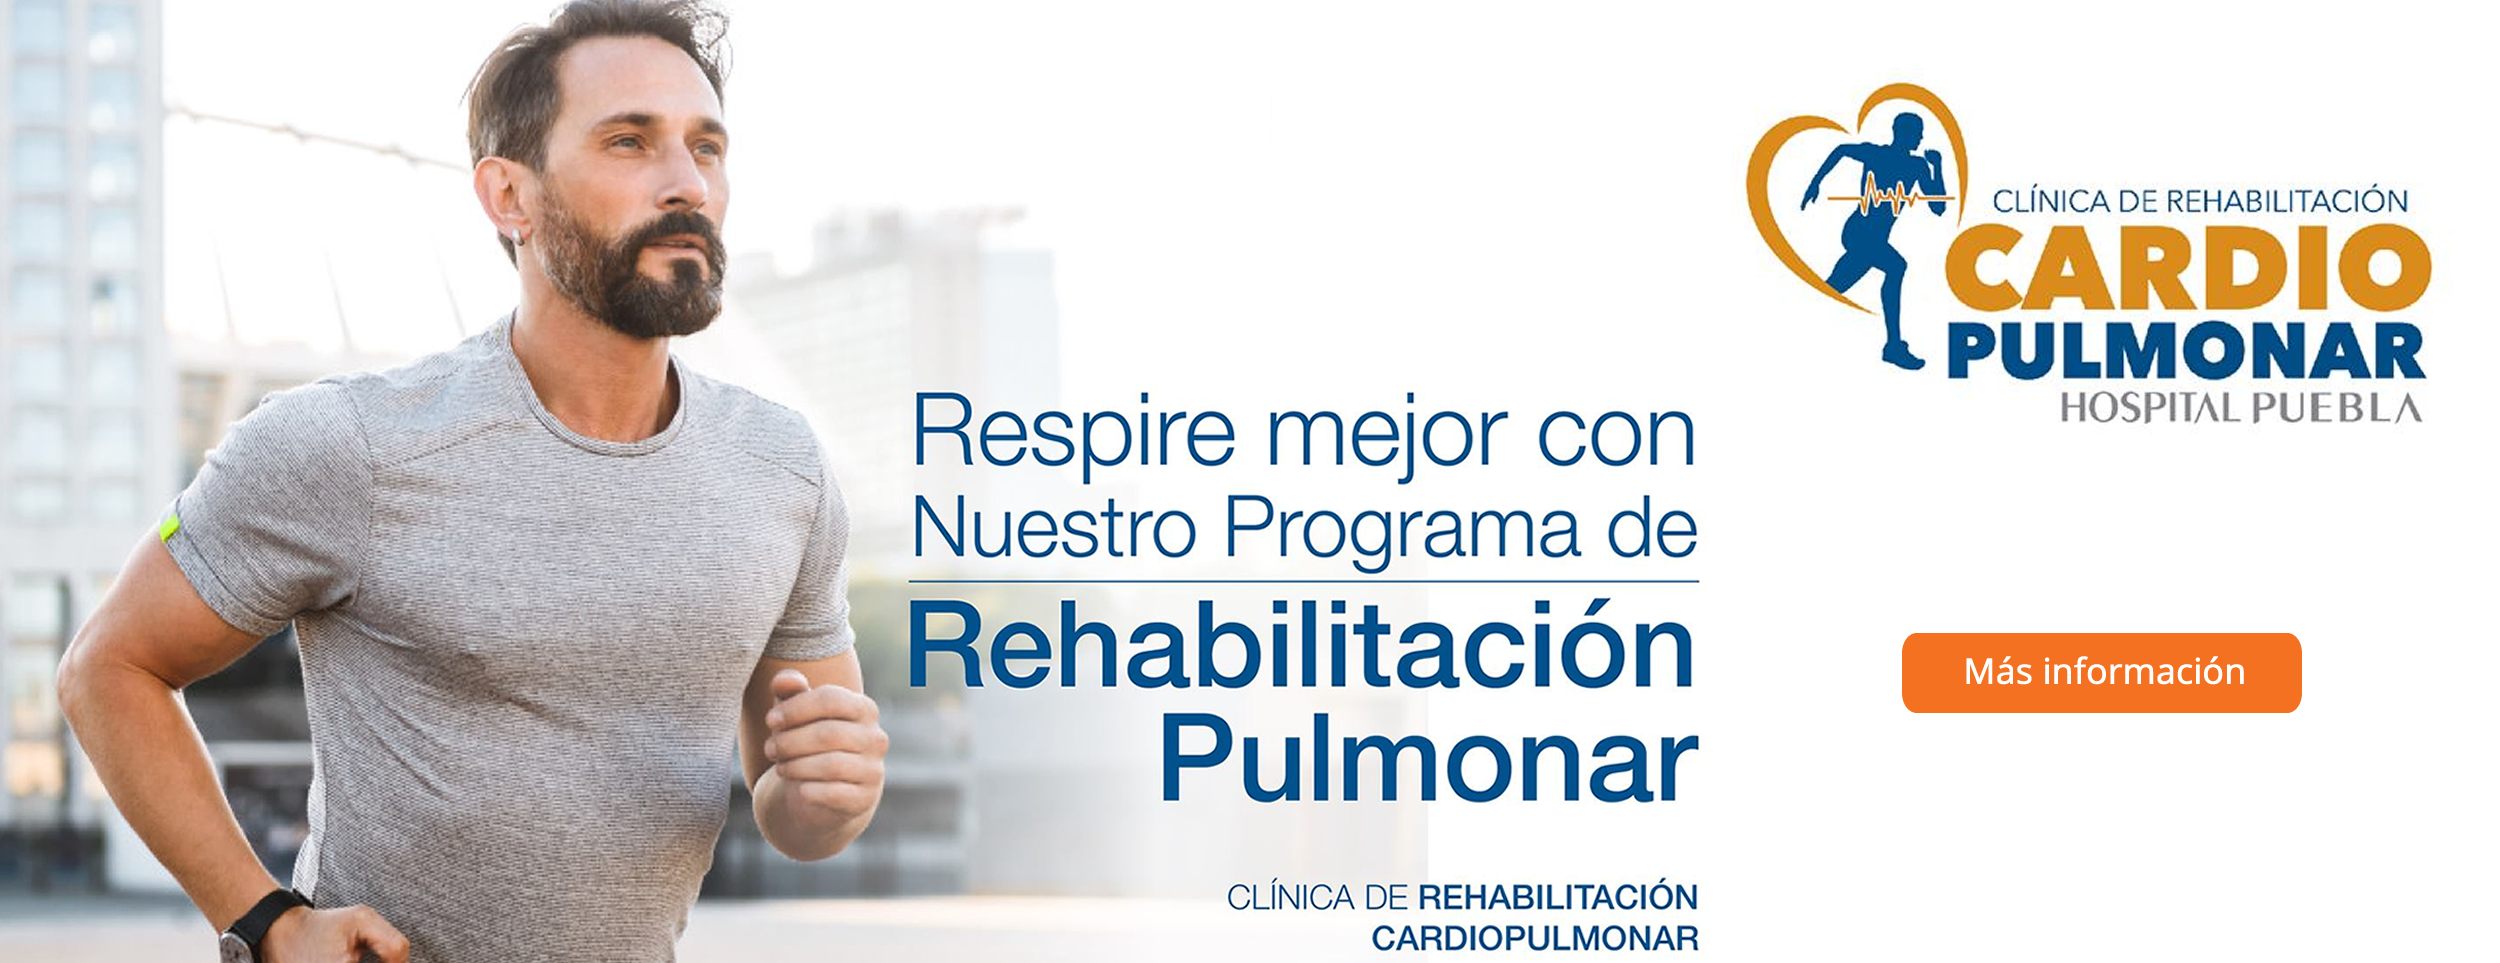 Clinica de rehabilitación cardiopulmonar de Hospital Puebla